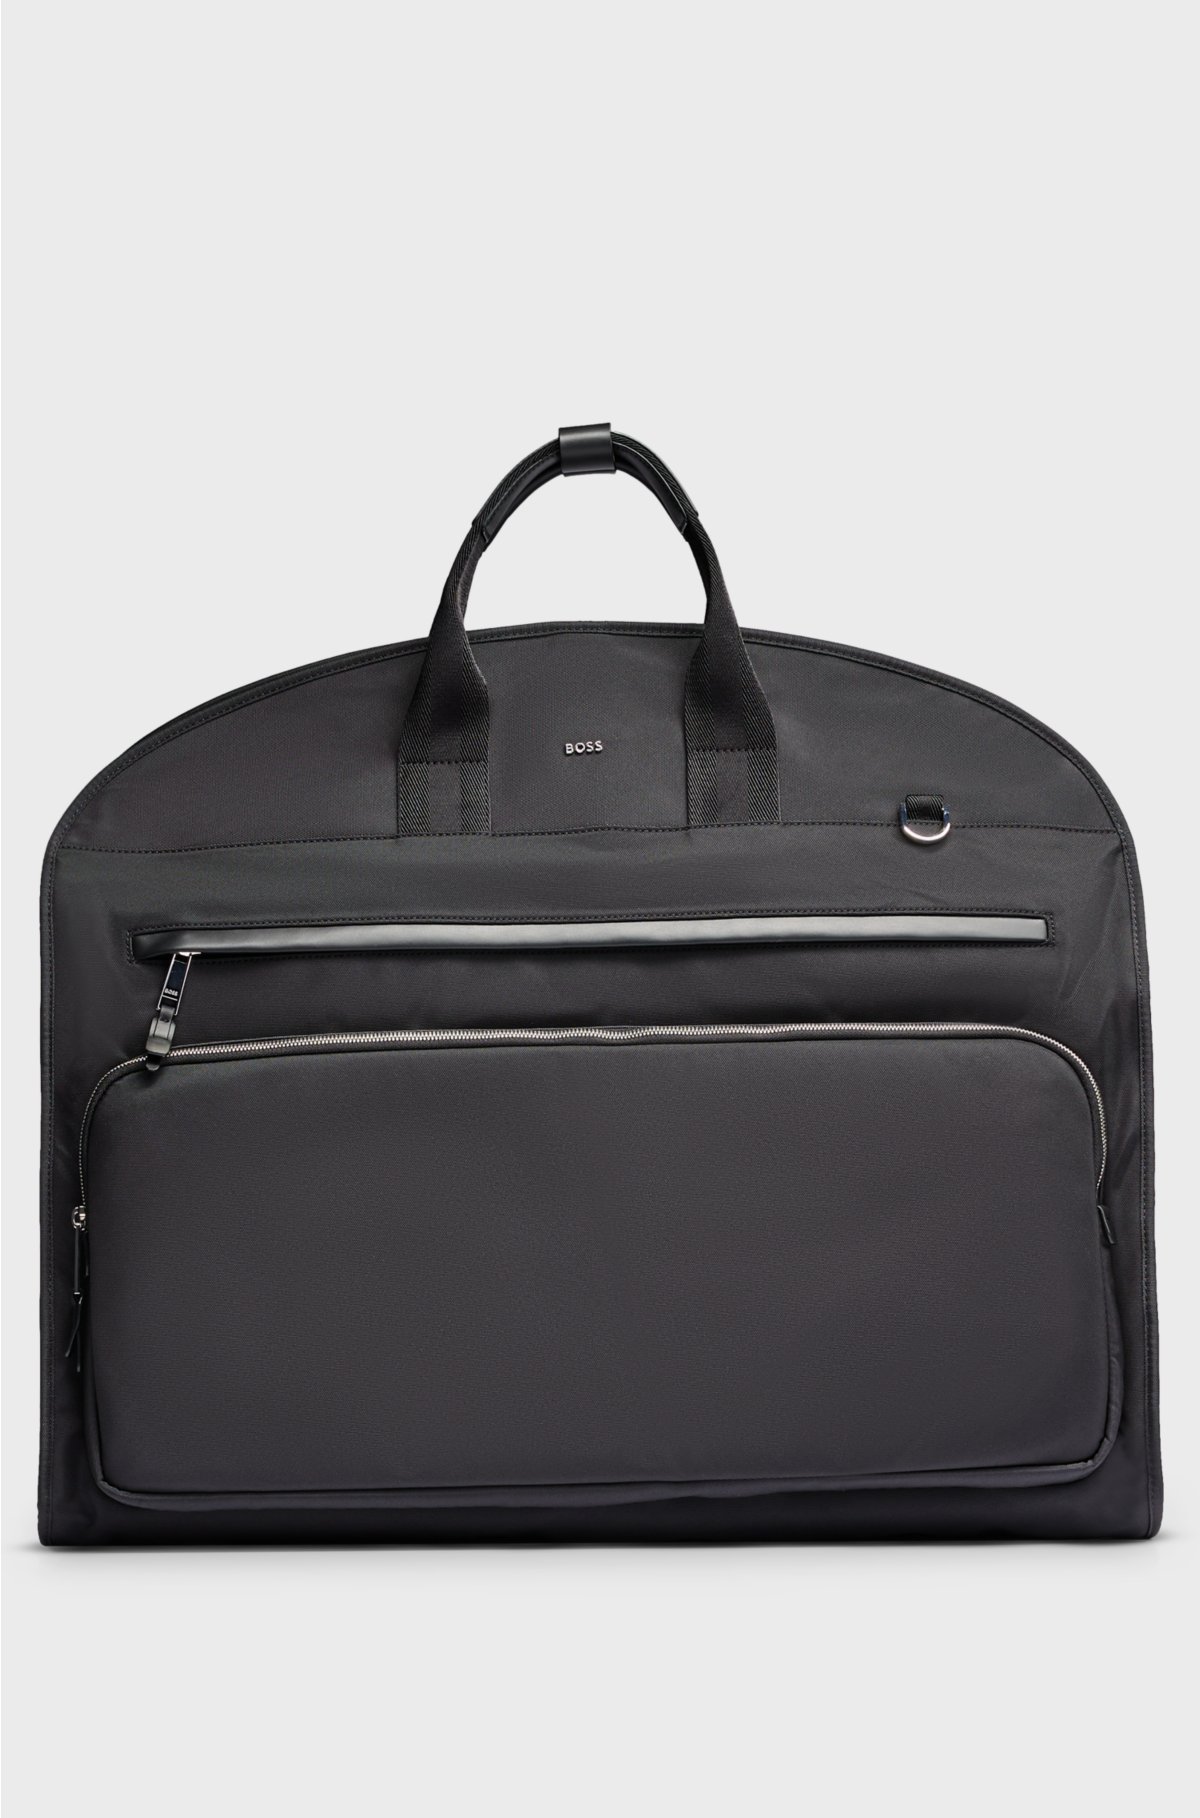 Garment bag in structured nylon with shoulder strap, Black